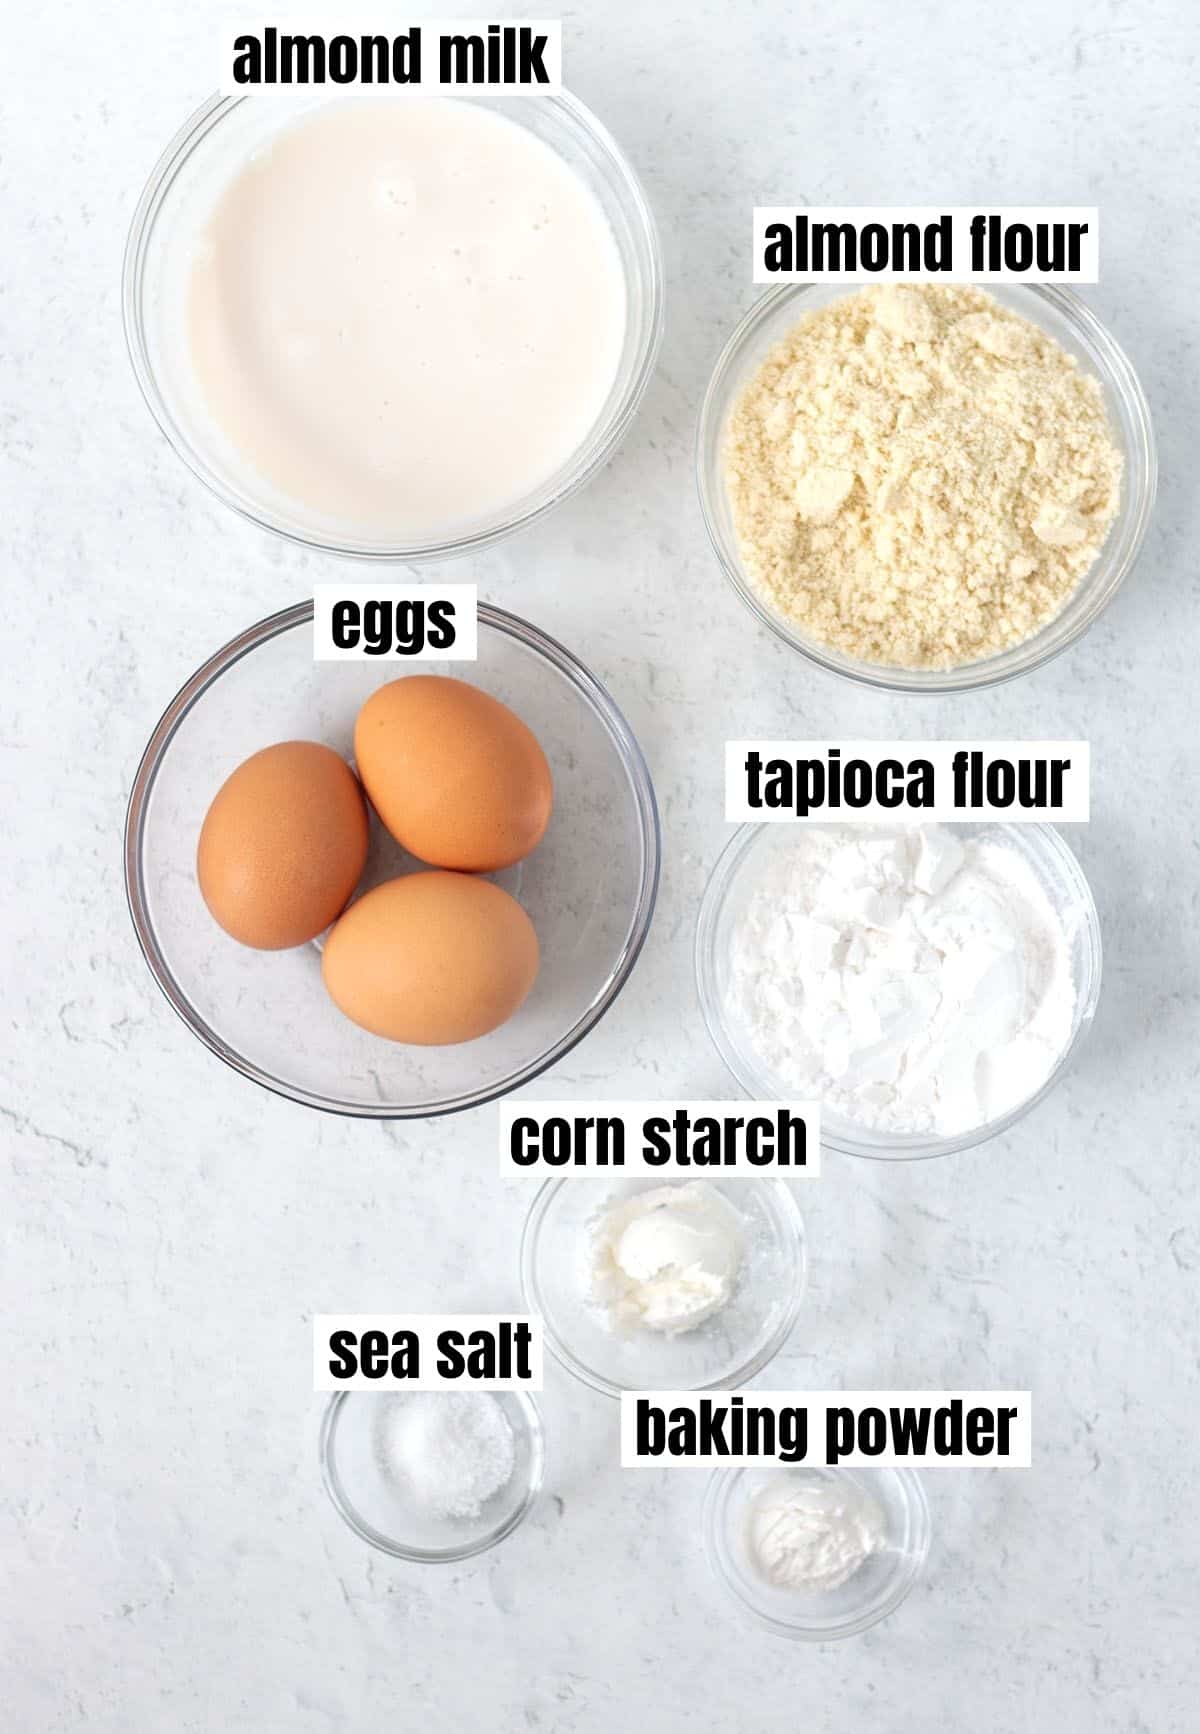 almond flour tortillas ingredients.